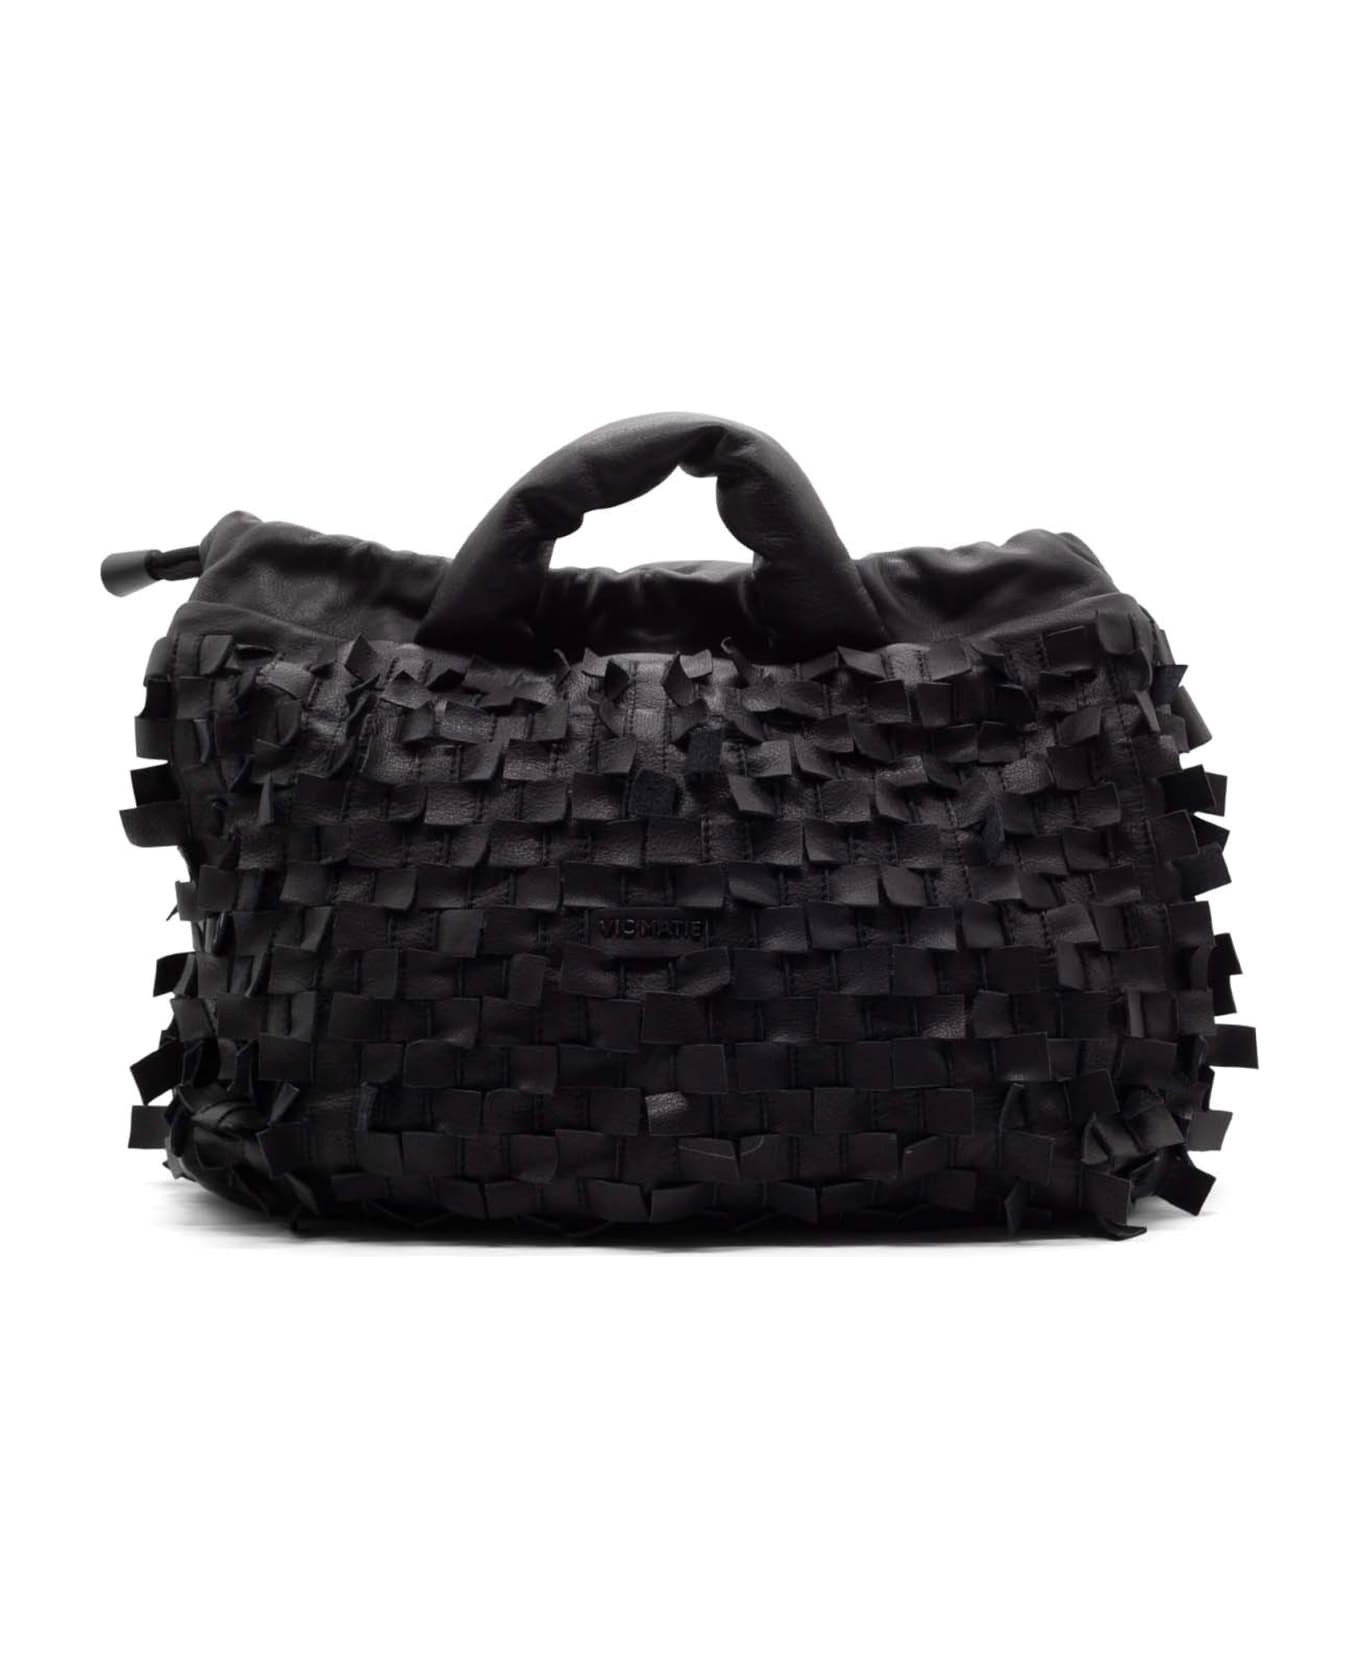 Vic Matié Black Leather Handbag With Shoulder Strap - BLACK